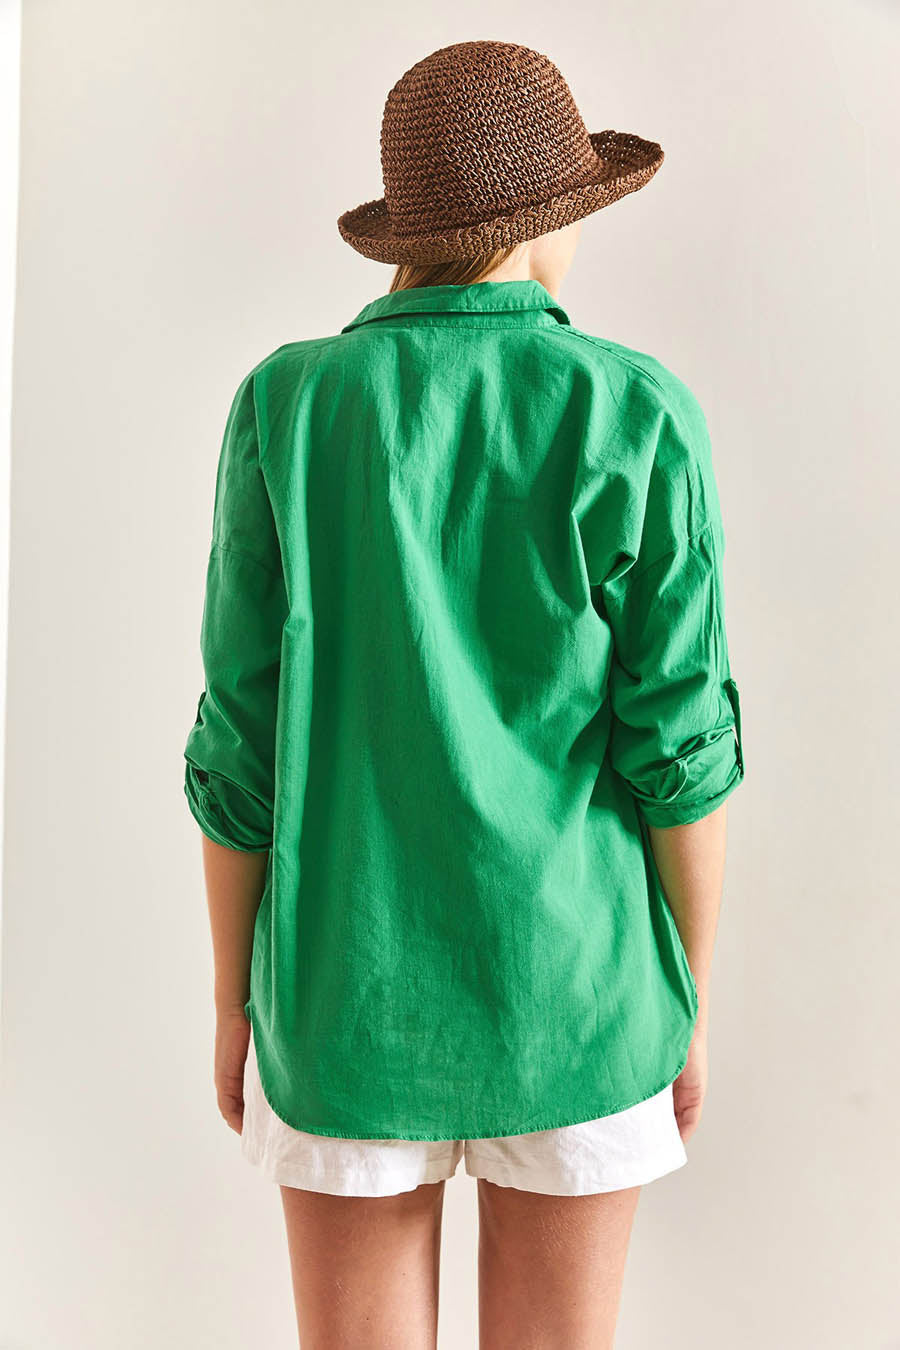 Γυναικείο πουκάμισο Marilou, Πράσινο 4